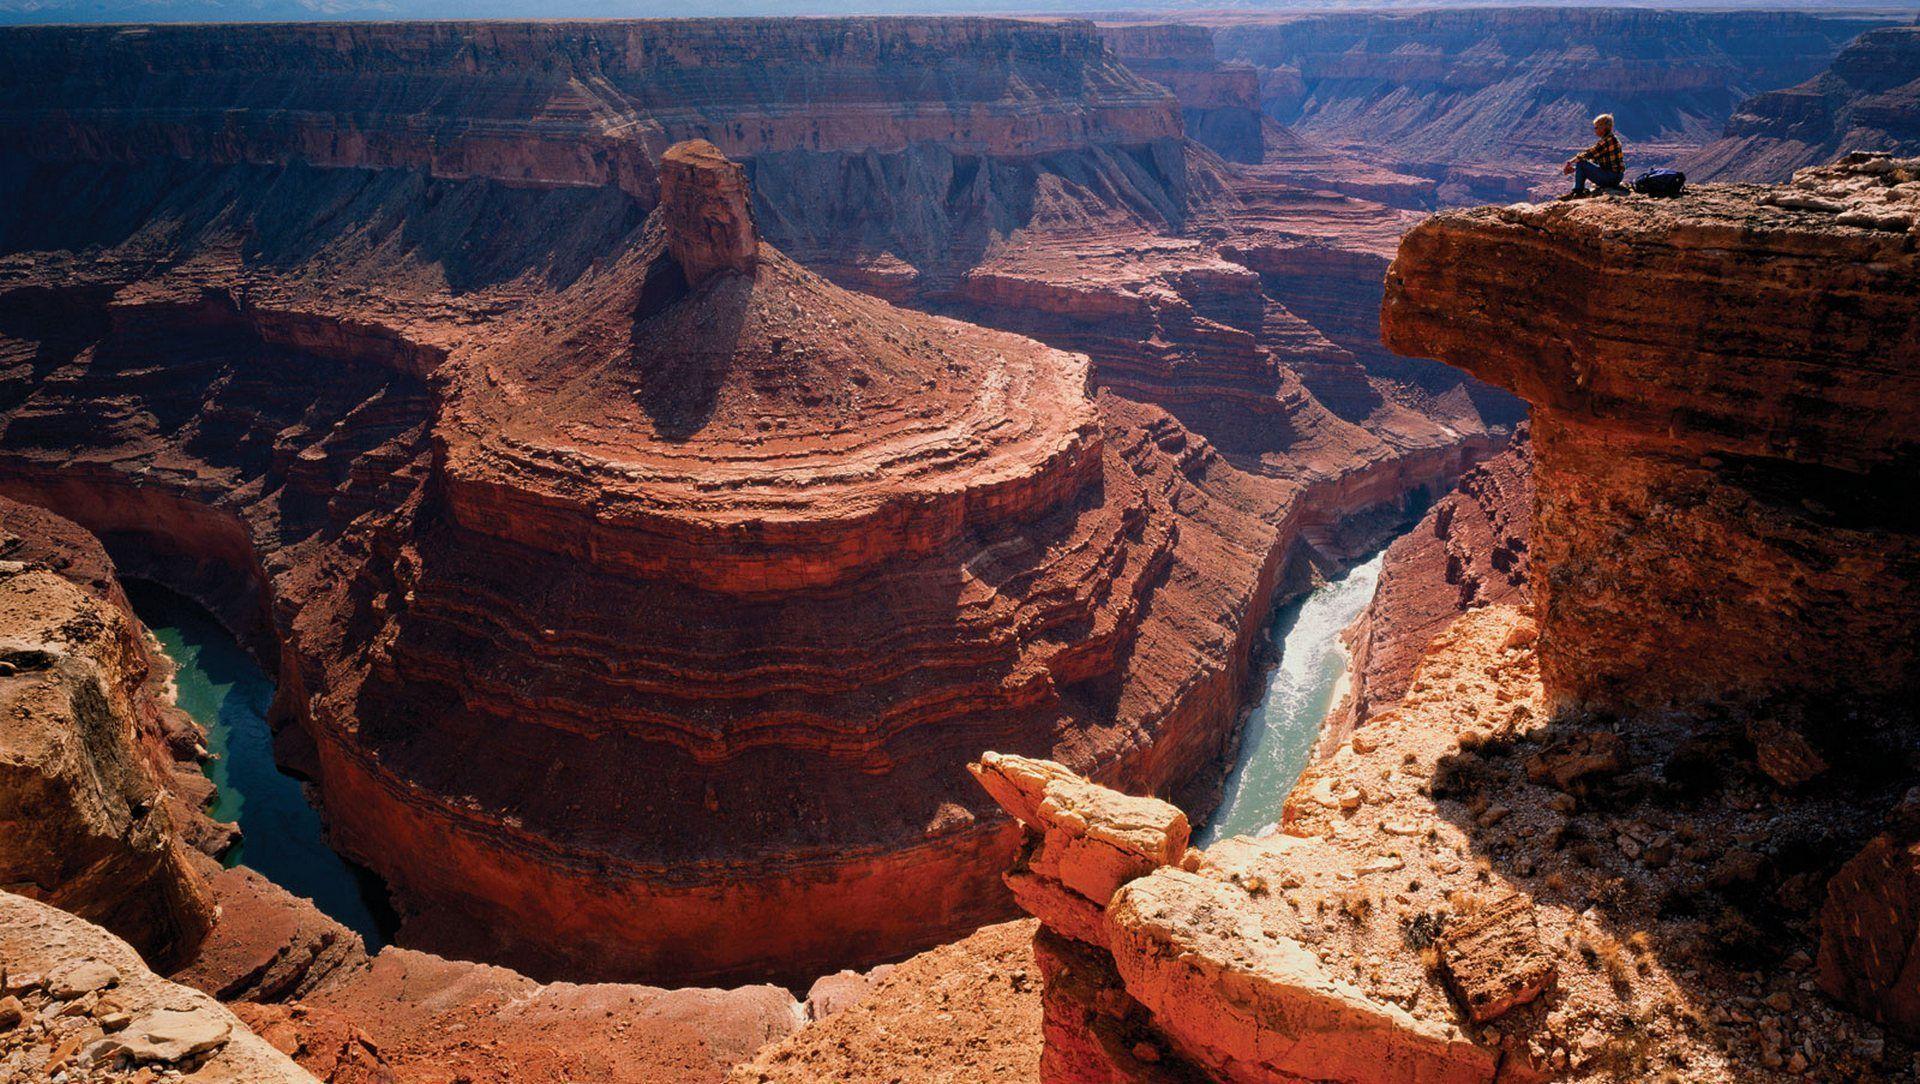 Grand Canyon Wallpaper 11556 1920x1080 px